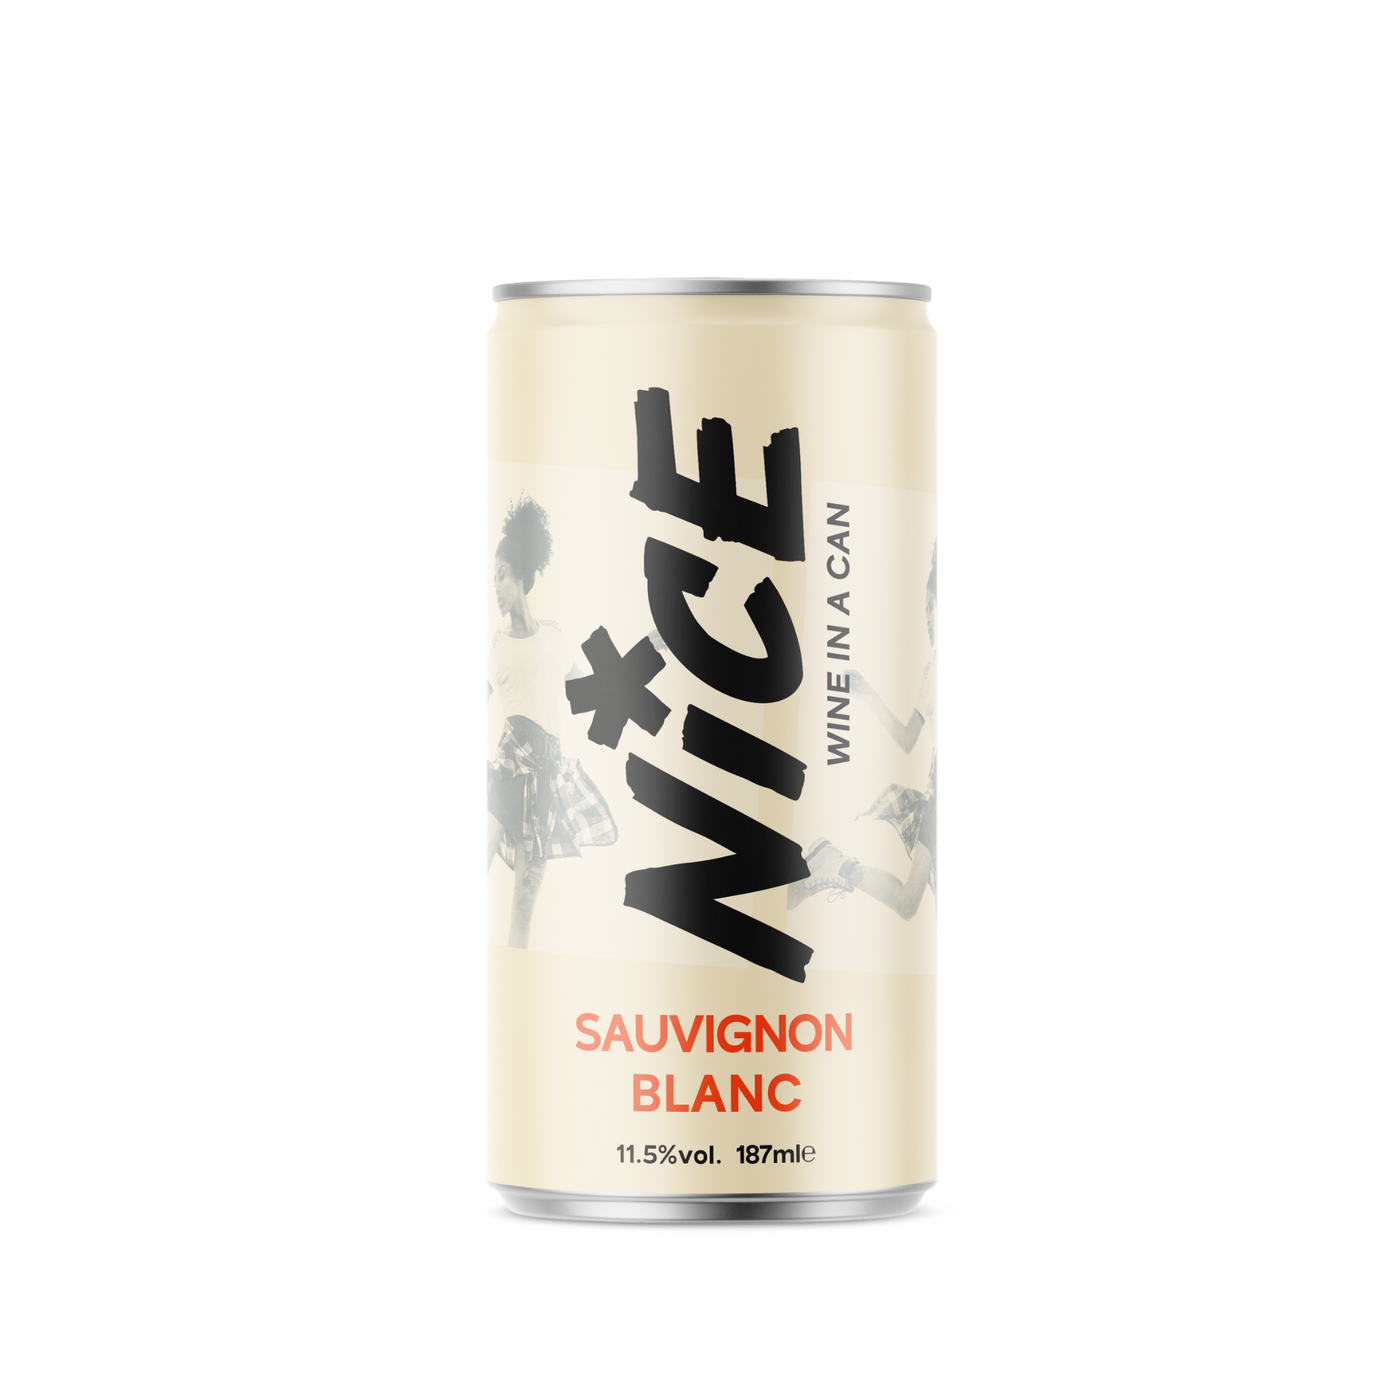 NICE Sauvignon Blanc can 18.7cl case of 12